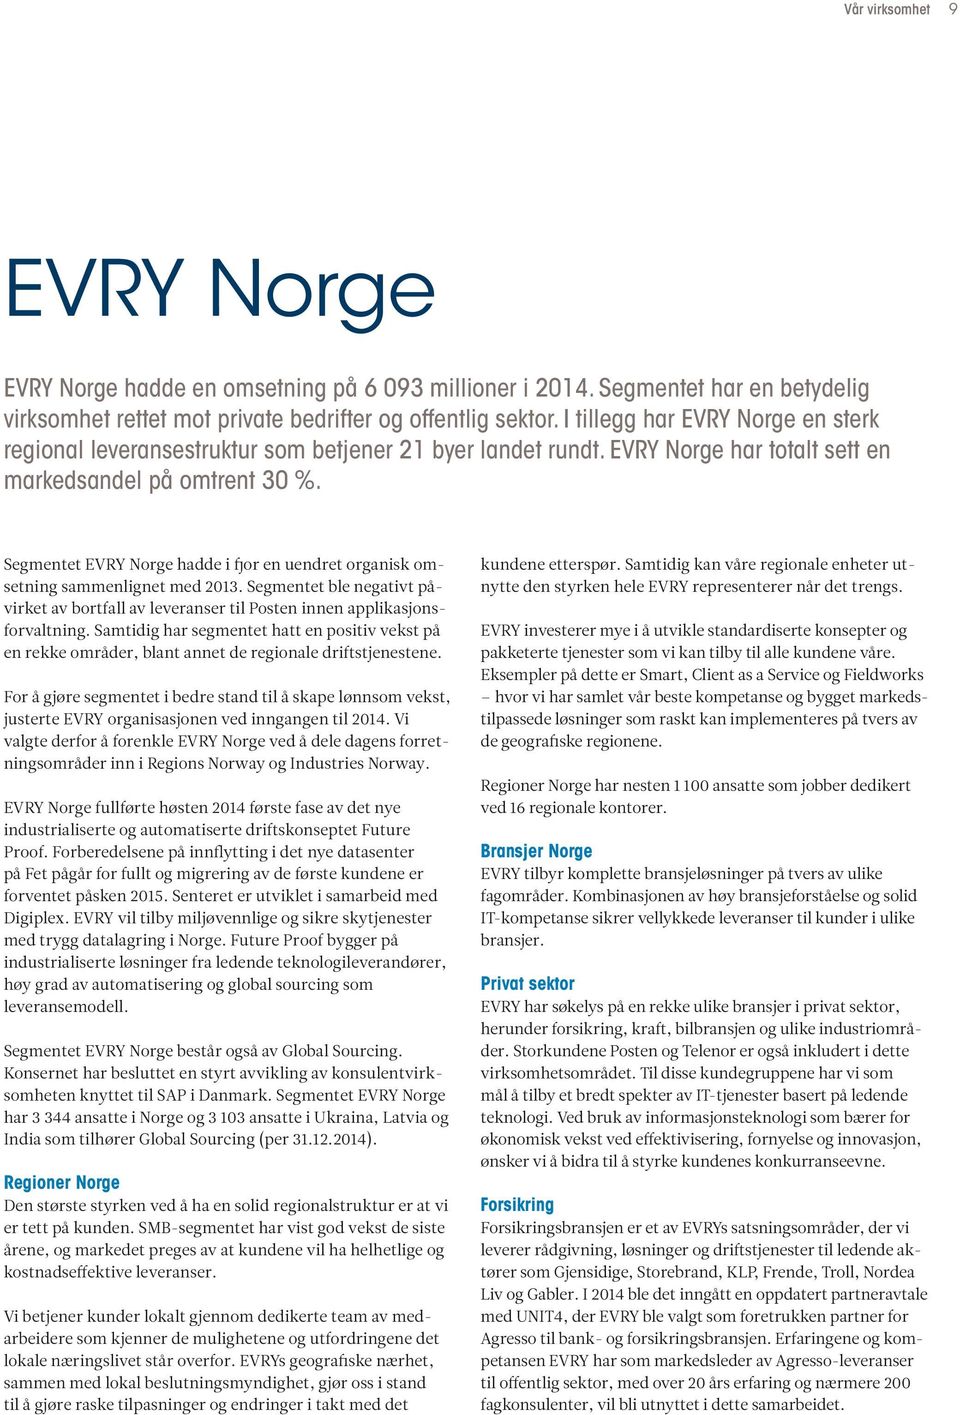 Segmentet EVRY Norge hadde i fjor en uendret organisk omsetning sammenlignet med 2013. Segmentet ble negativt påvirket av bortfall av leveranser til Posten innen applikasjonsforvaltning.